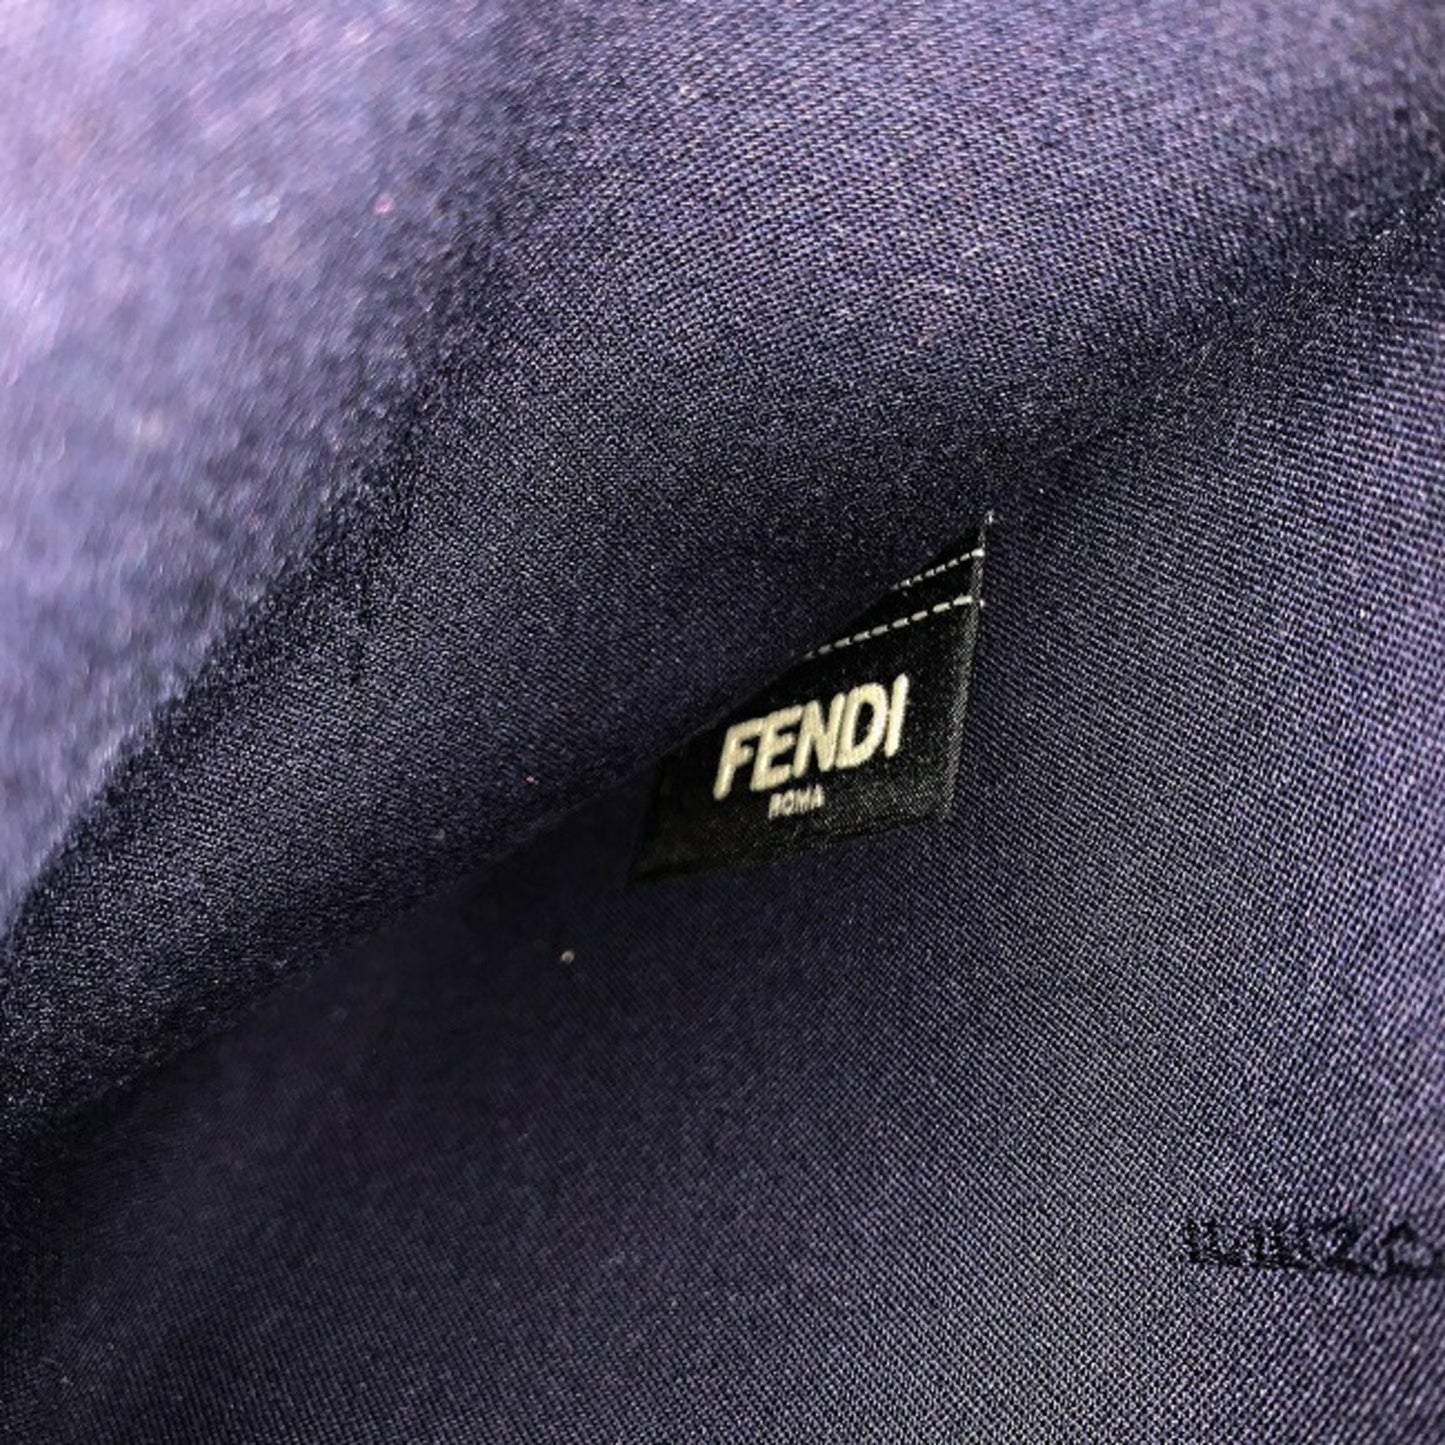 Fendi Unisex Fendi Monster Leather Handbag in Navy